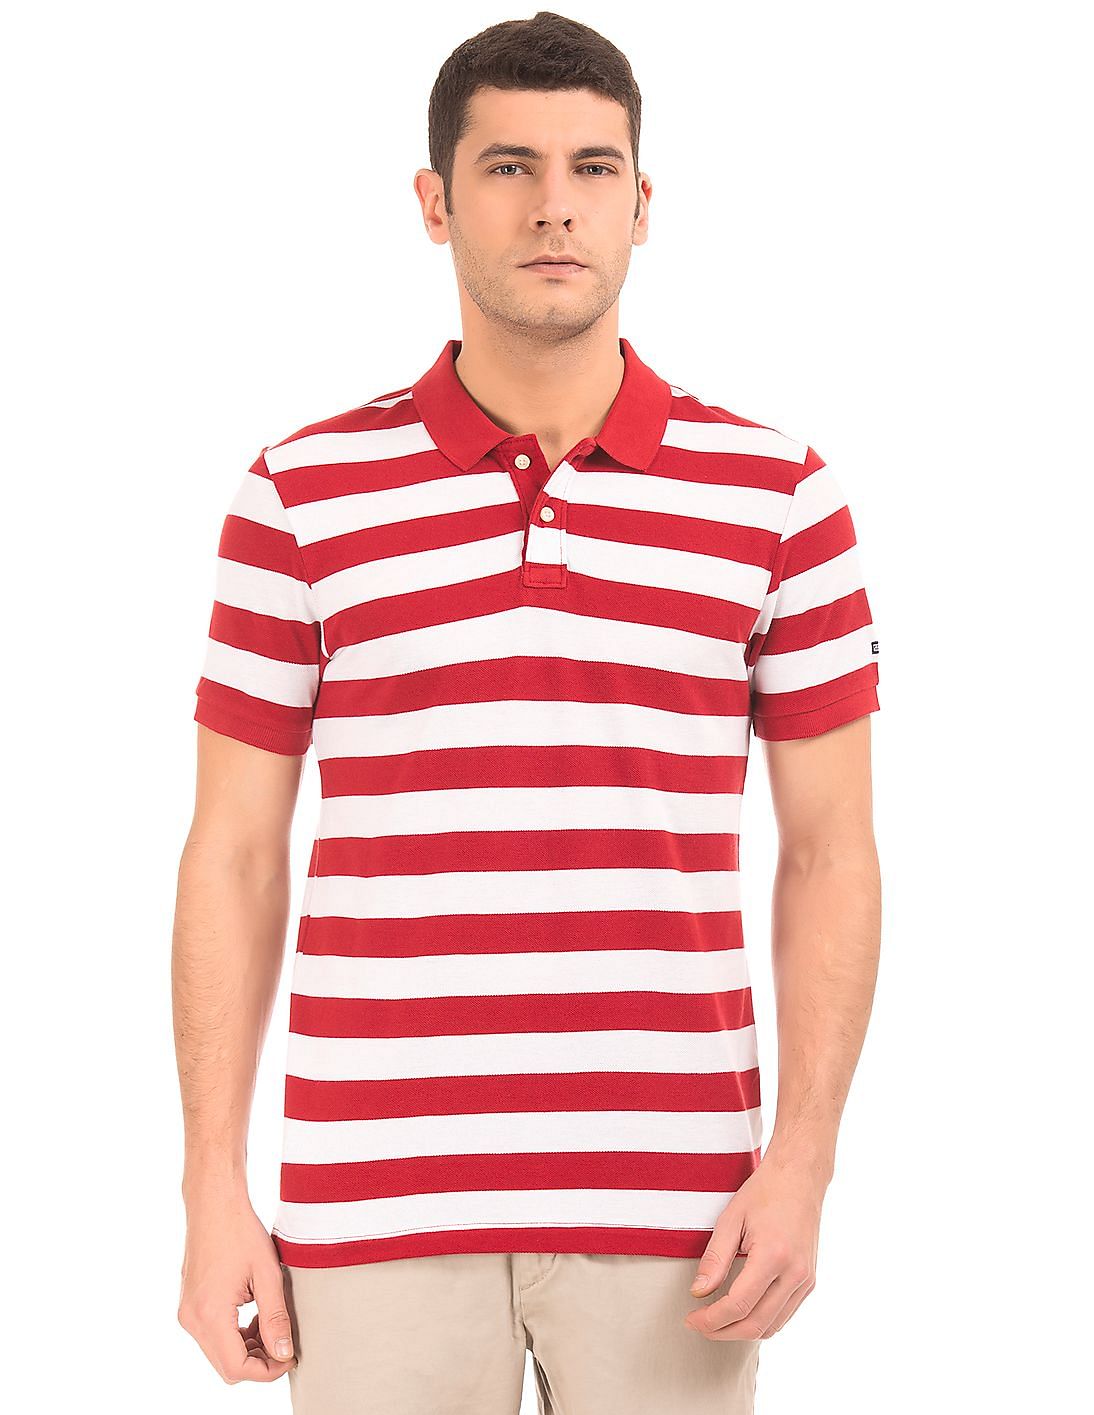 Buy Arrow Sports Striped Pique Polo Shirt - NNNOW.com